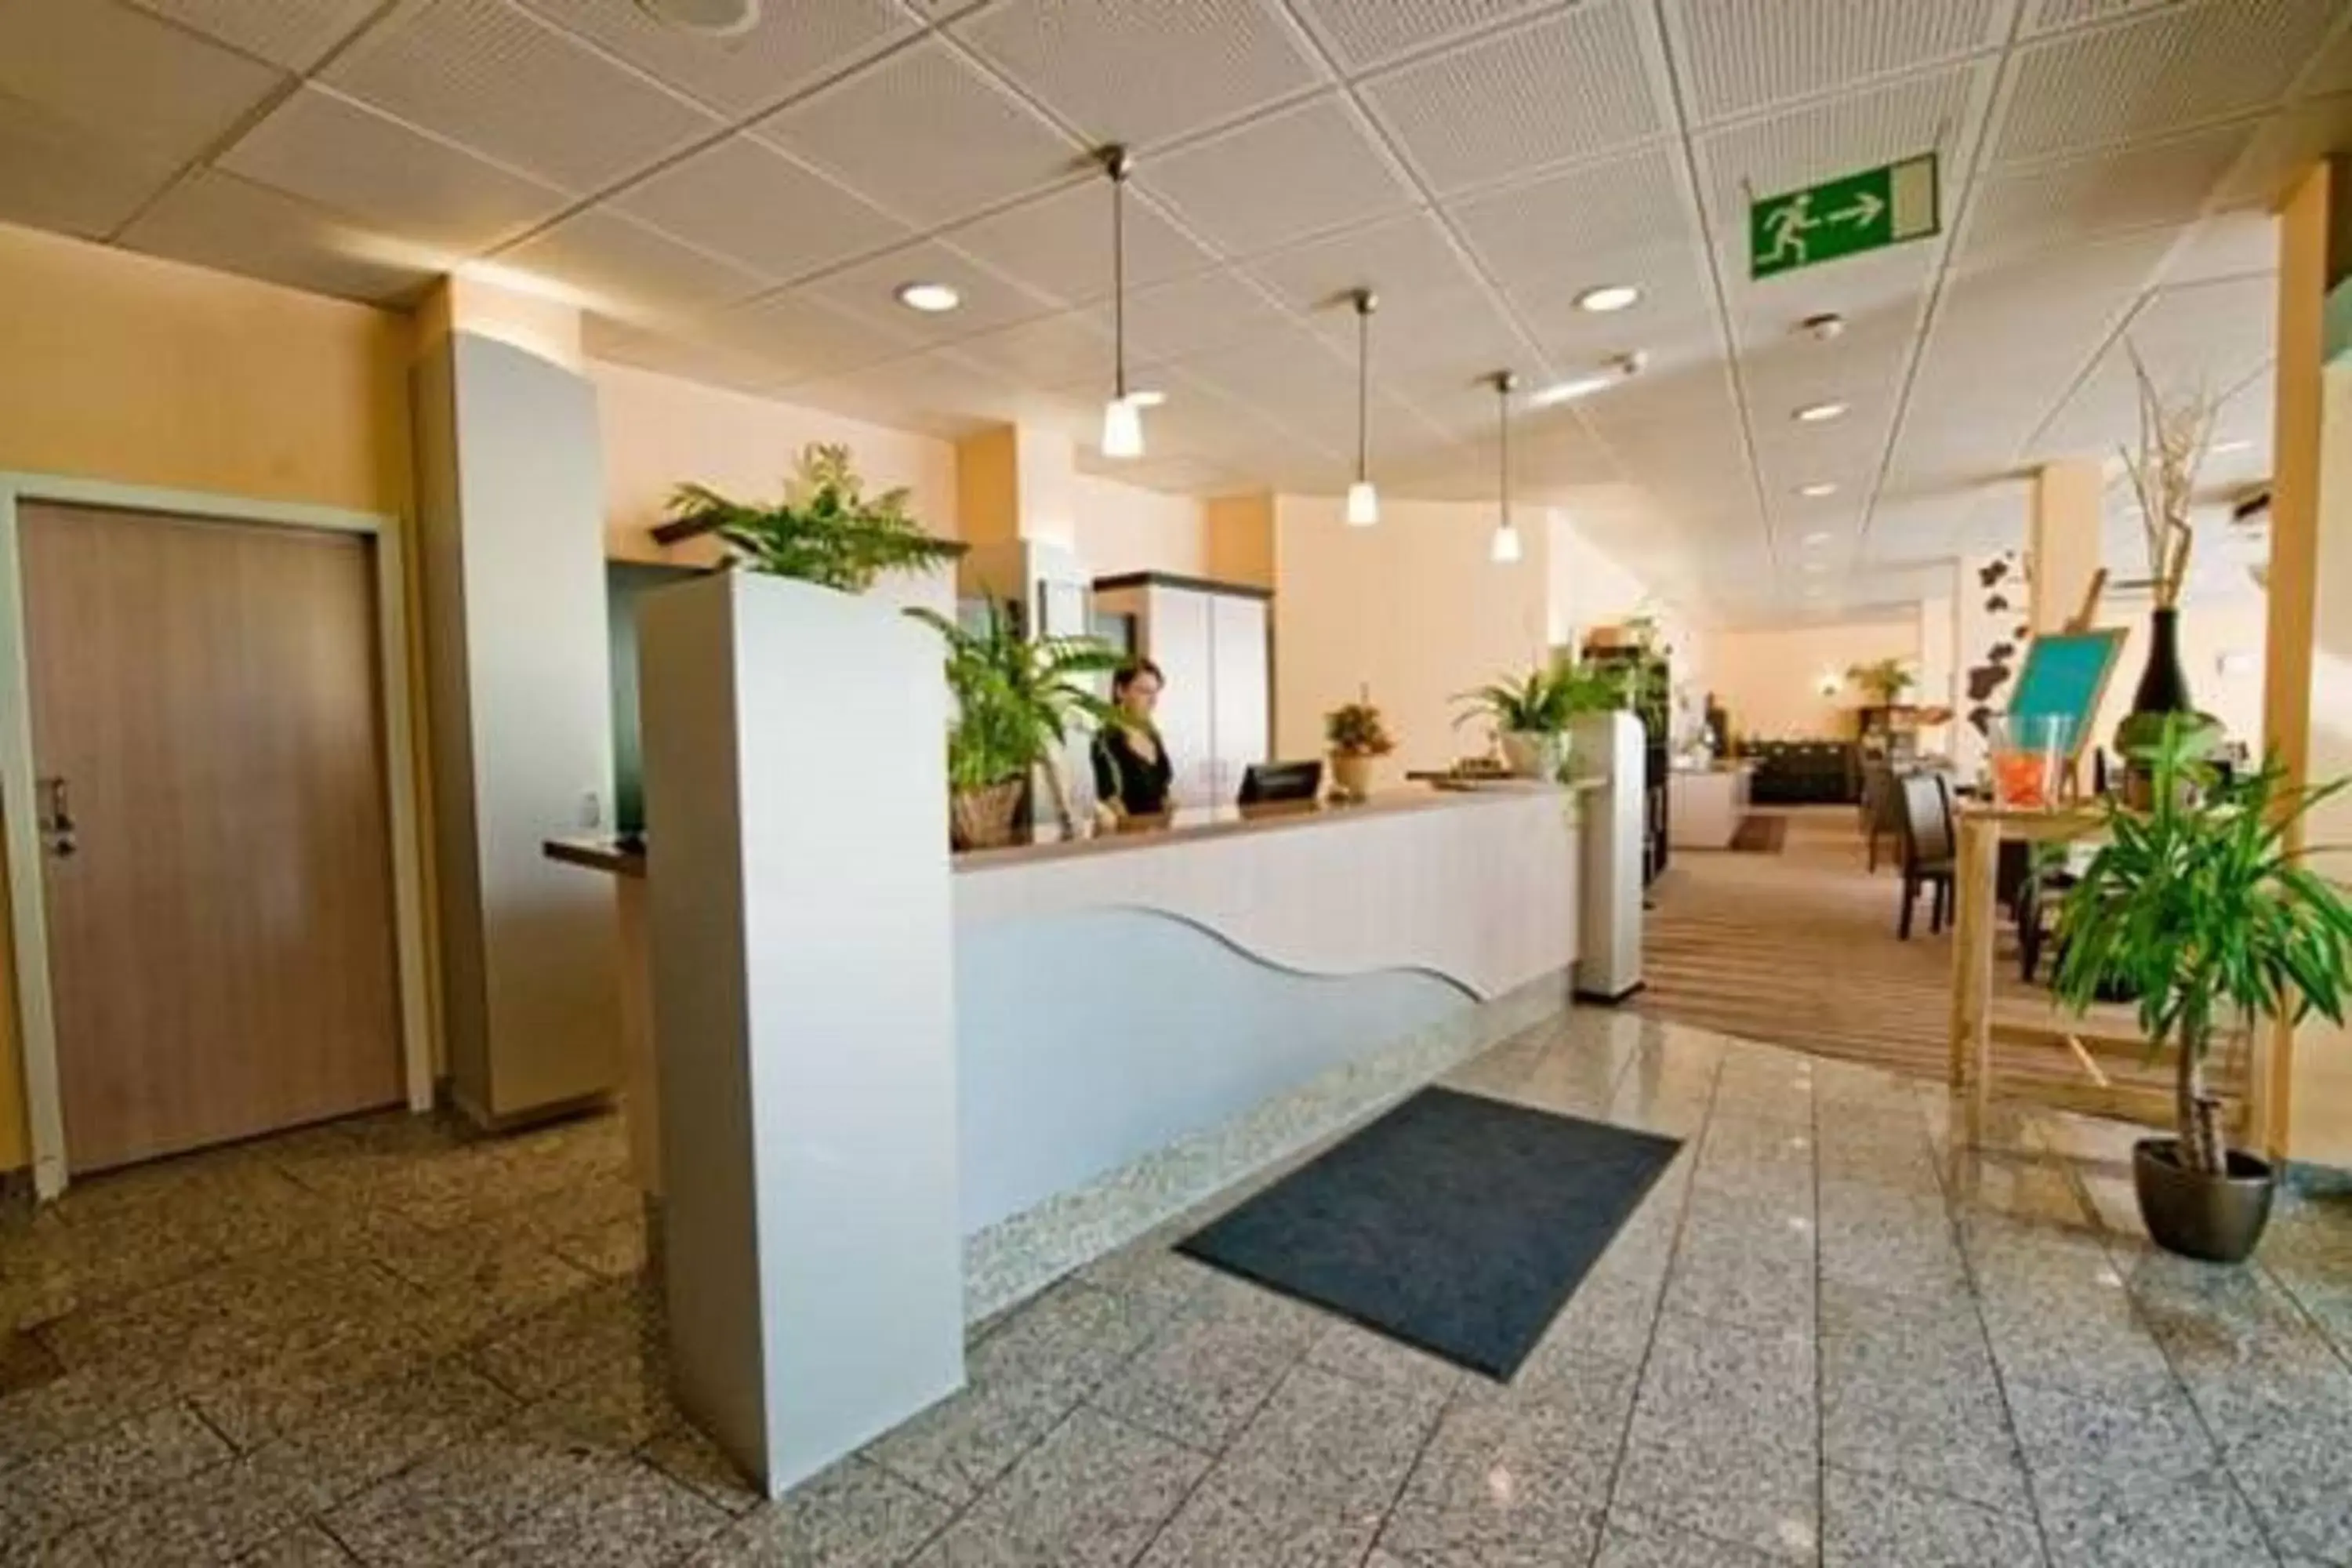 Lobby or reception in PLAZA Hotel Bruchsal